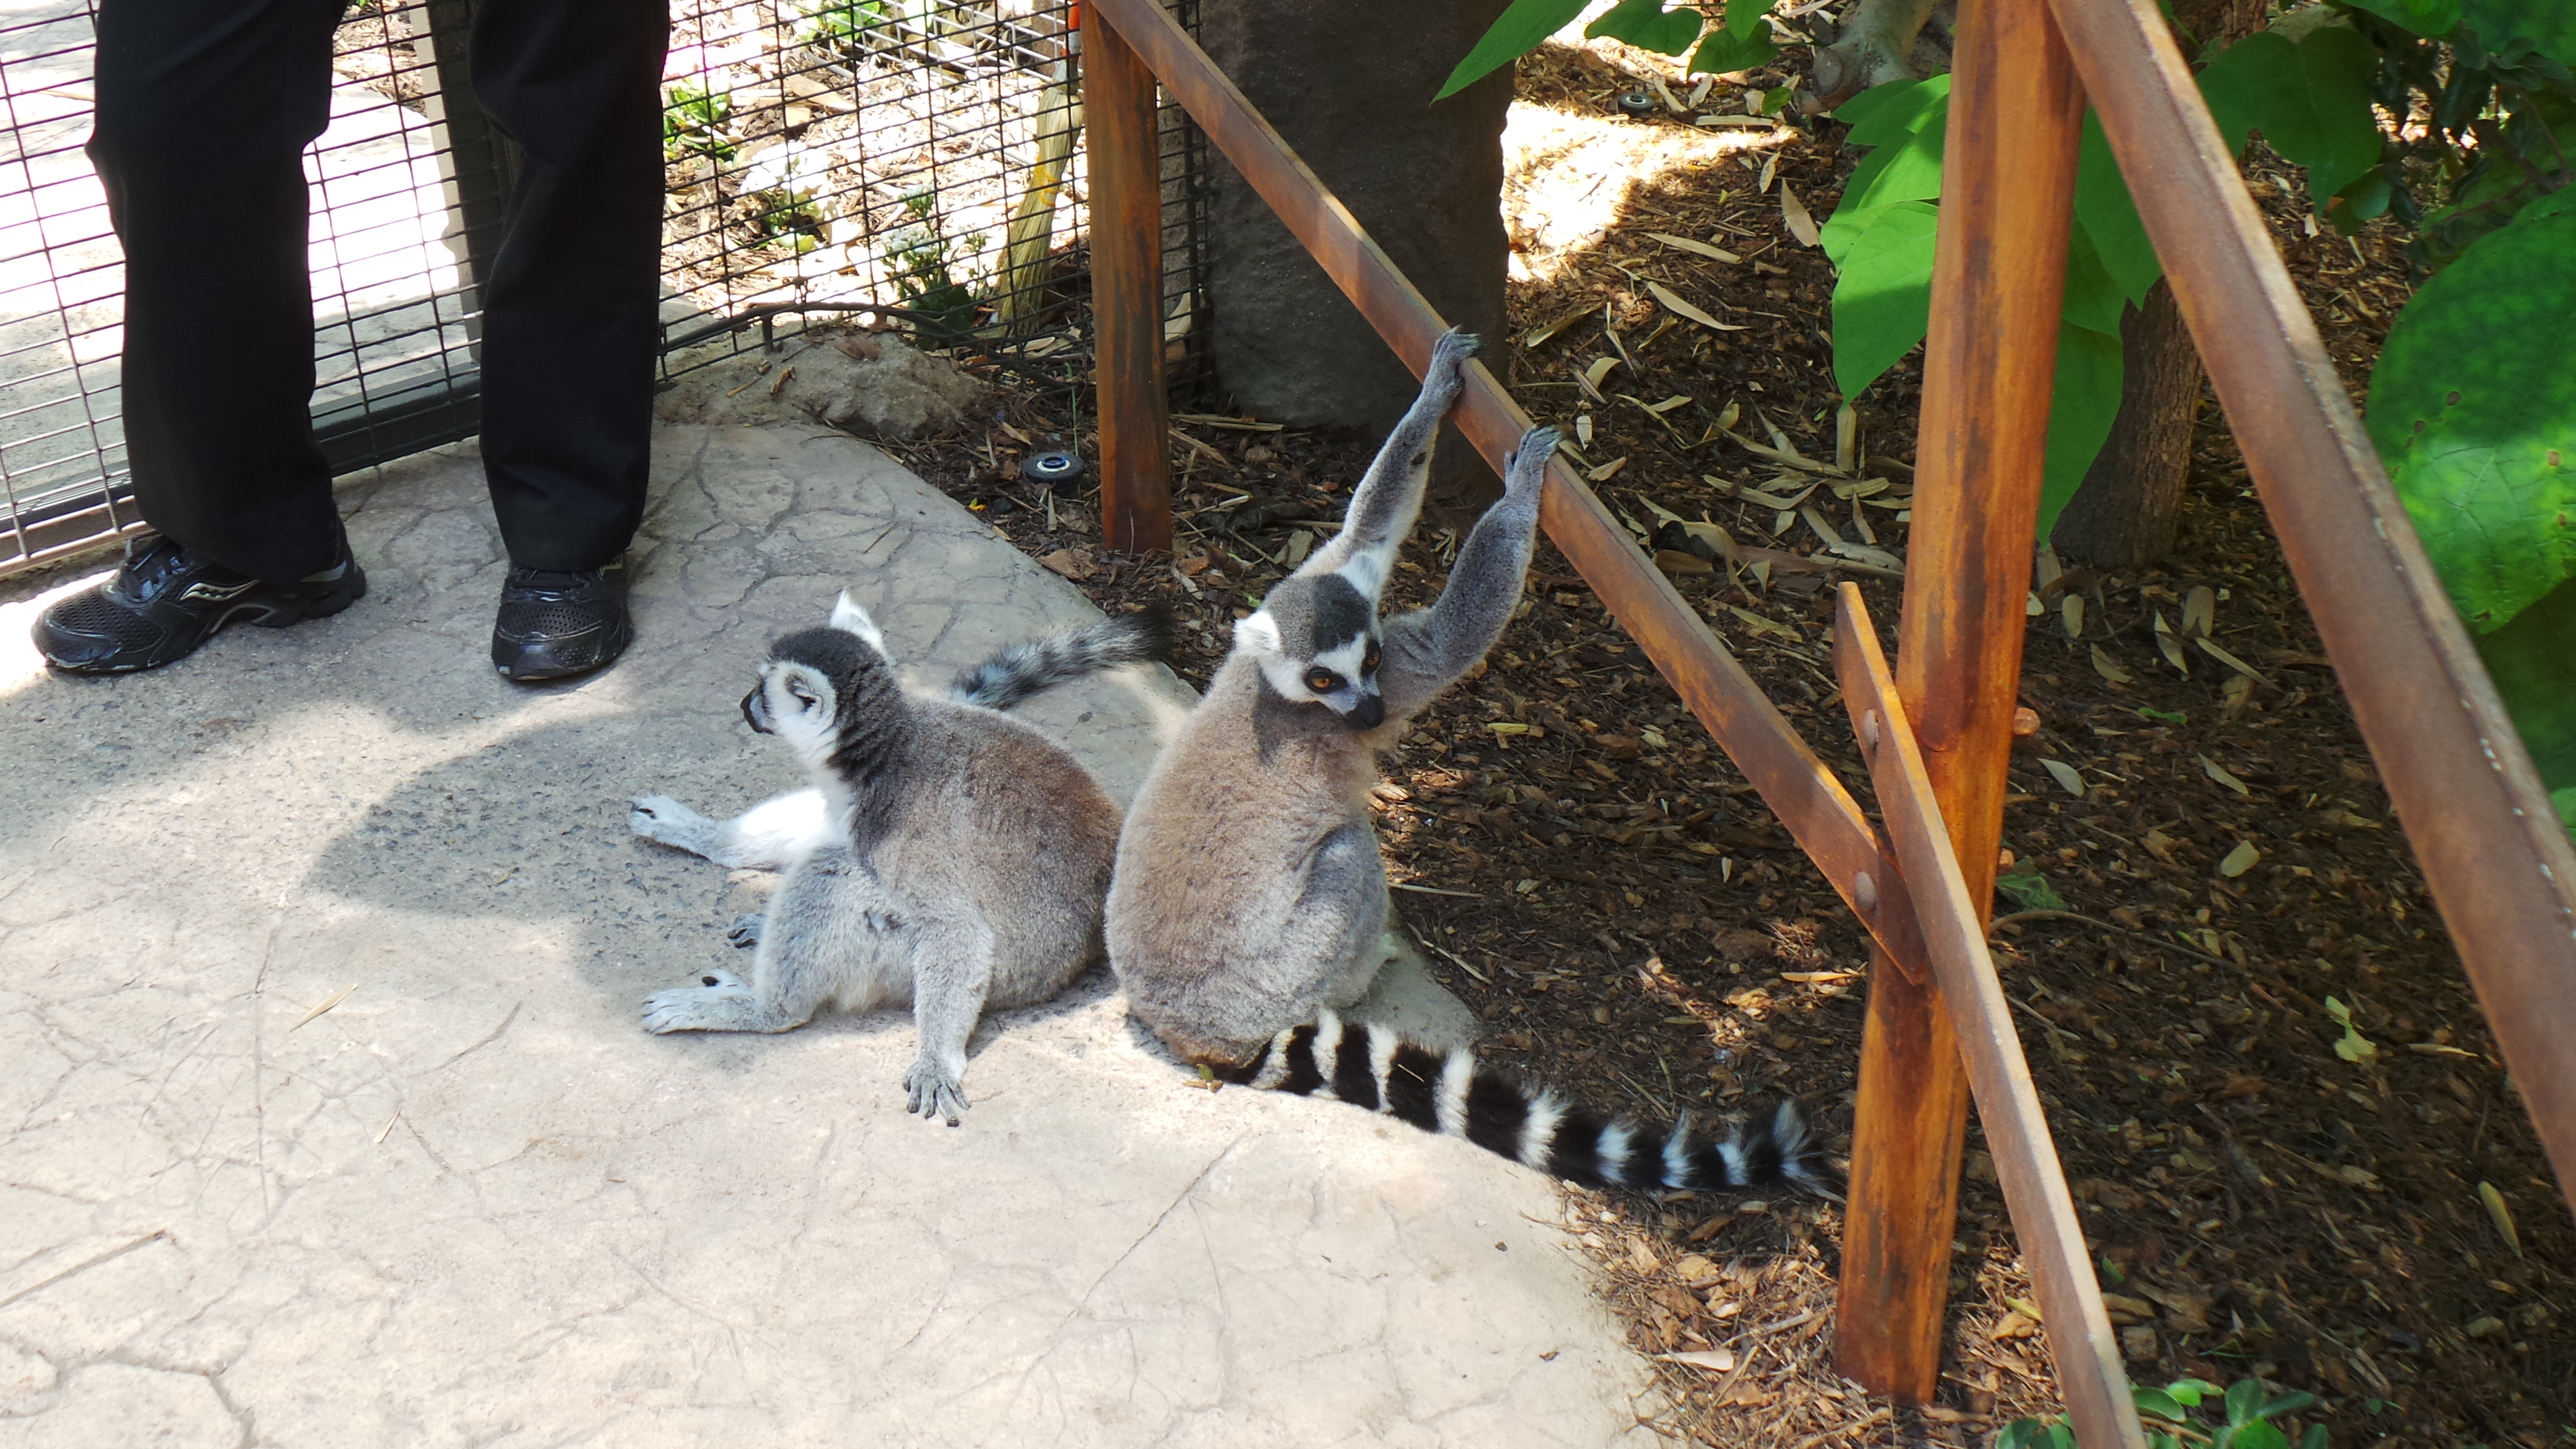 Lemur Walk at San Diego Zoo Safari Park